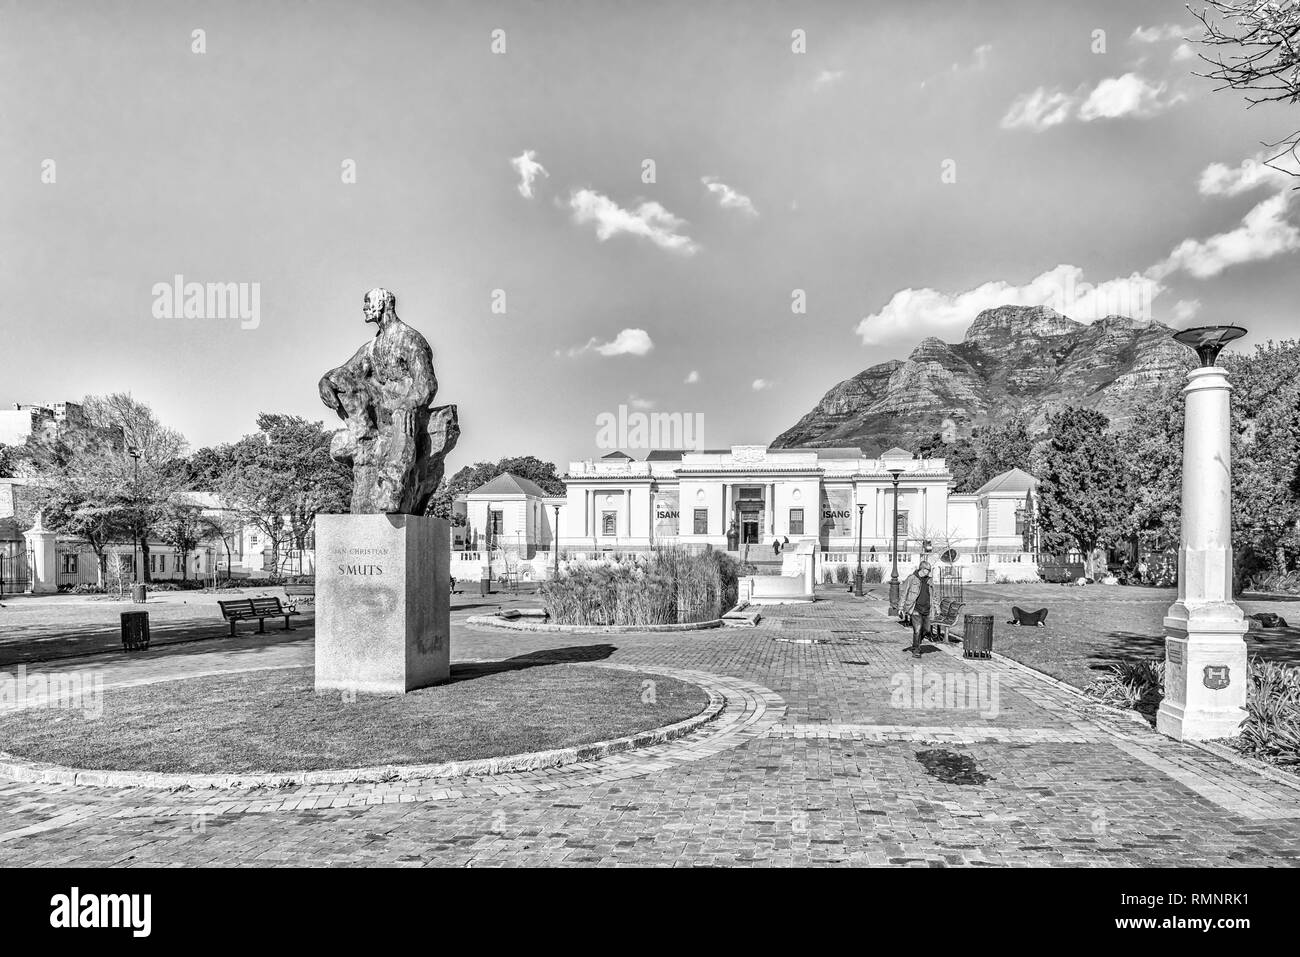 CAPE TOWN, AFRIQUE DU SUD, le 17 août 2018 : La South African National Gallery, avec une statue de Jan Smuts en face, à l'entreprise Jardins en C Banque D'Images